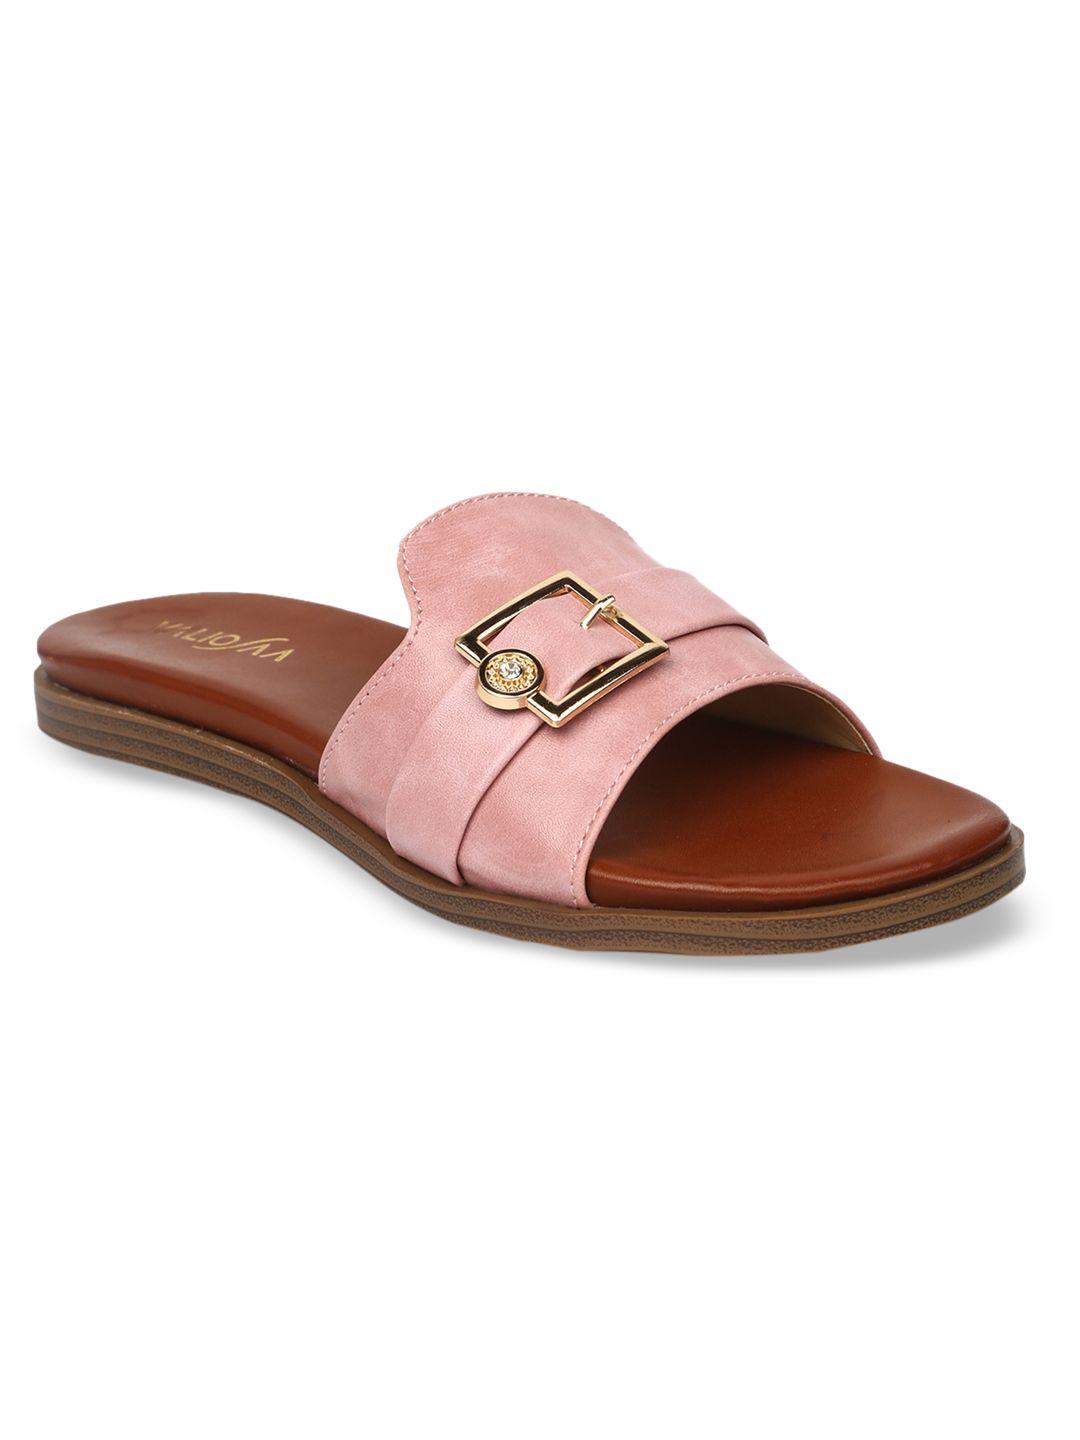 valiosaa women pink solid open toe flats